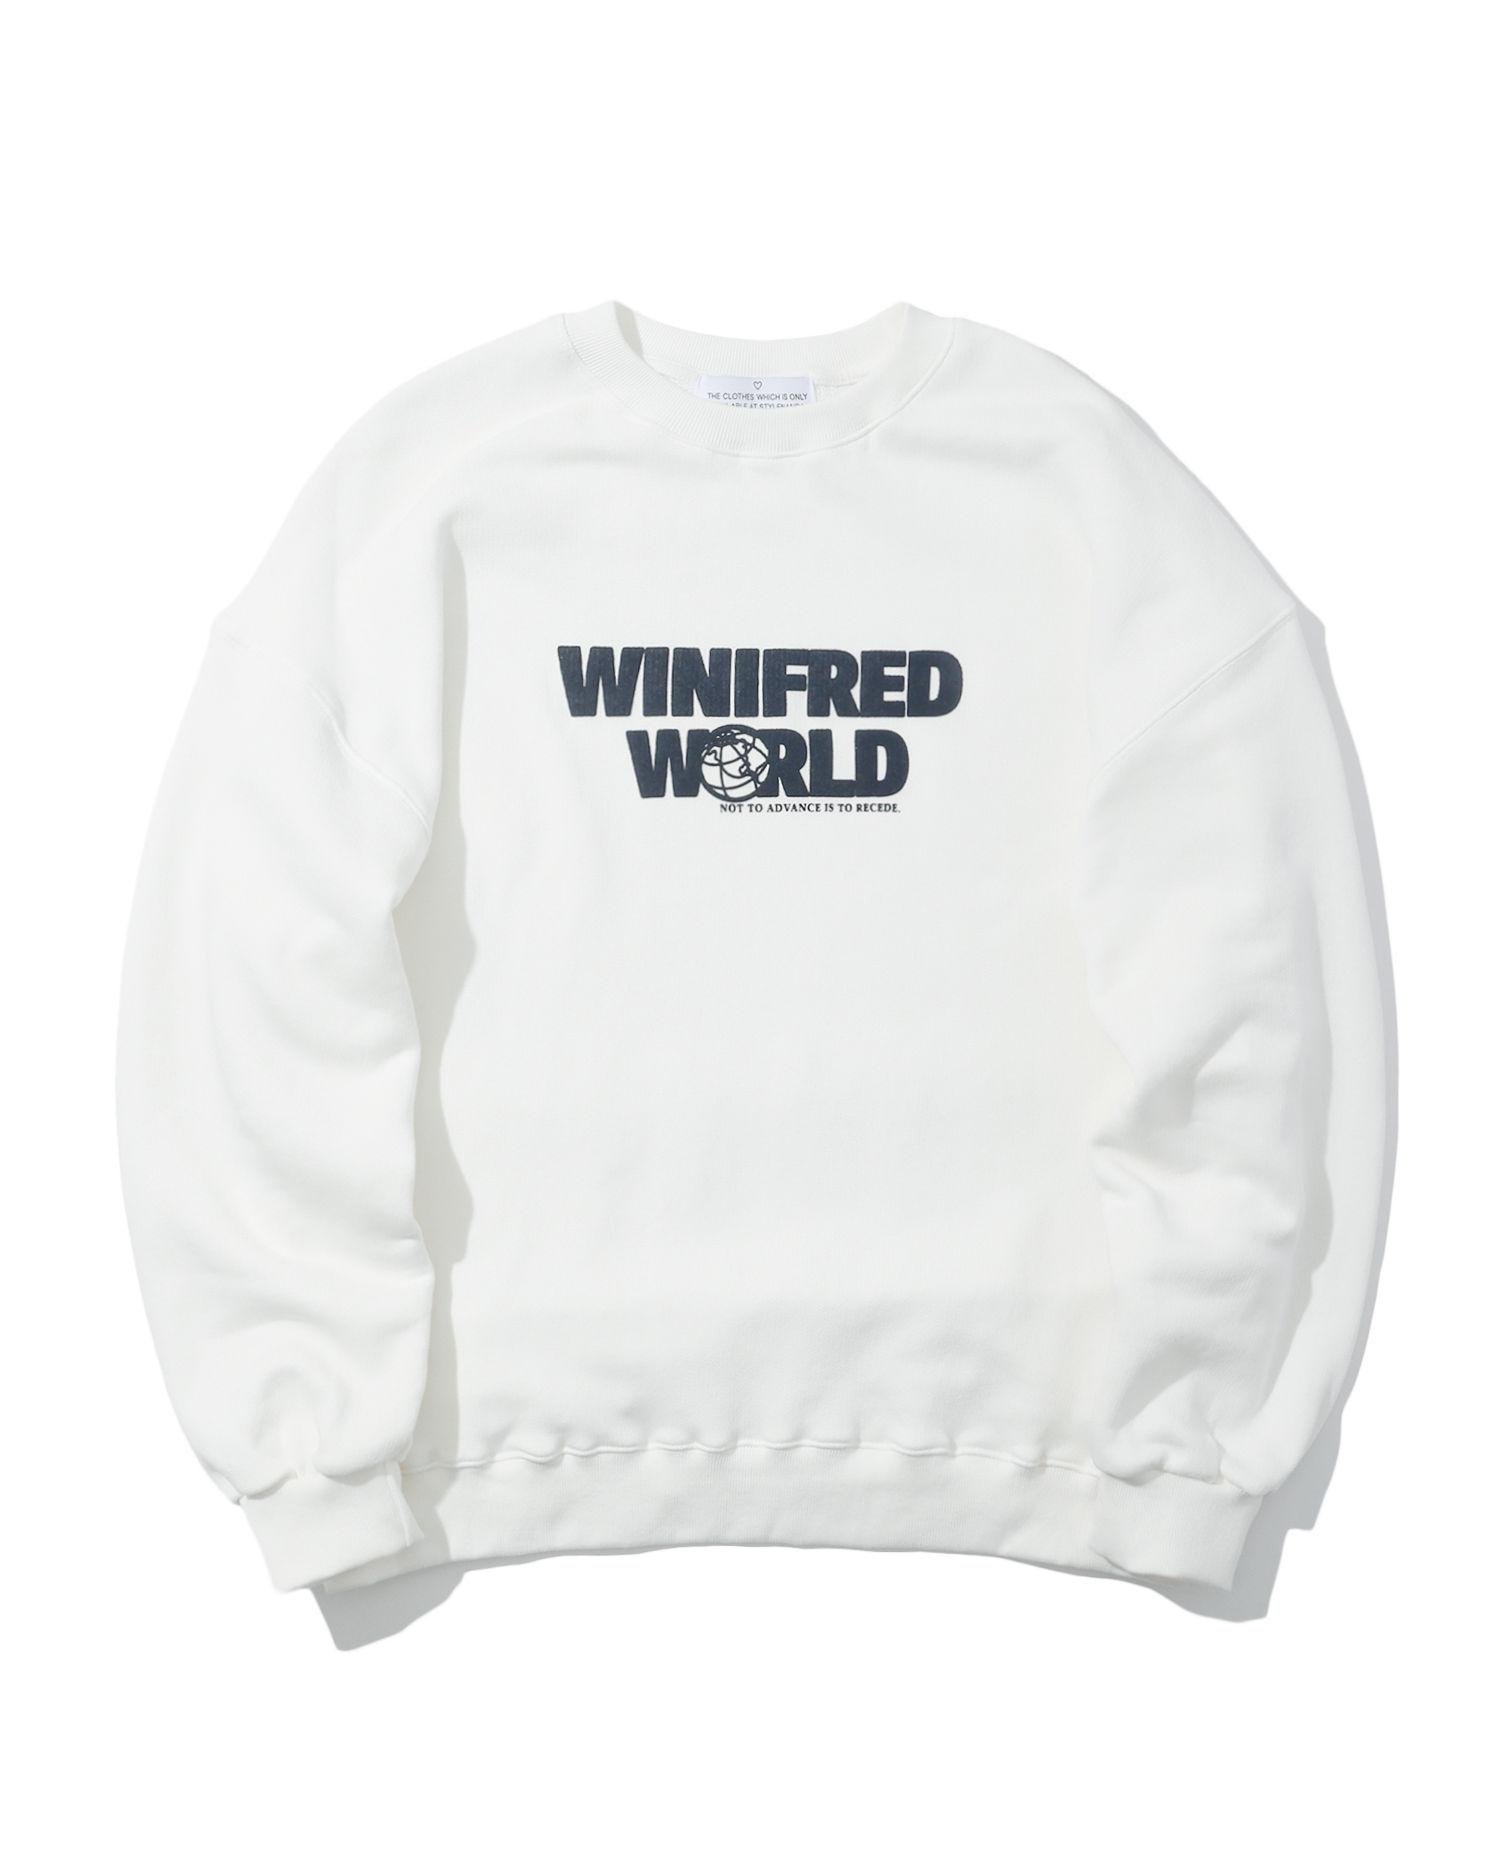 Winifred World print sweatshirt by STYLENANDA